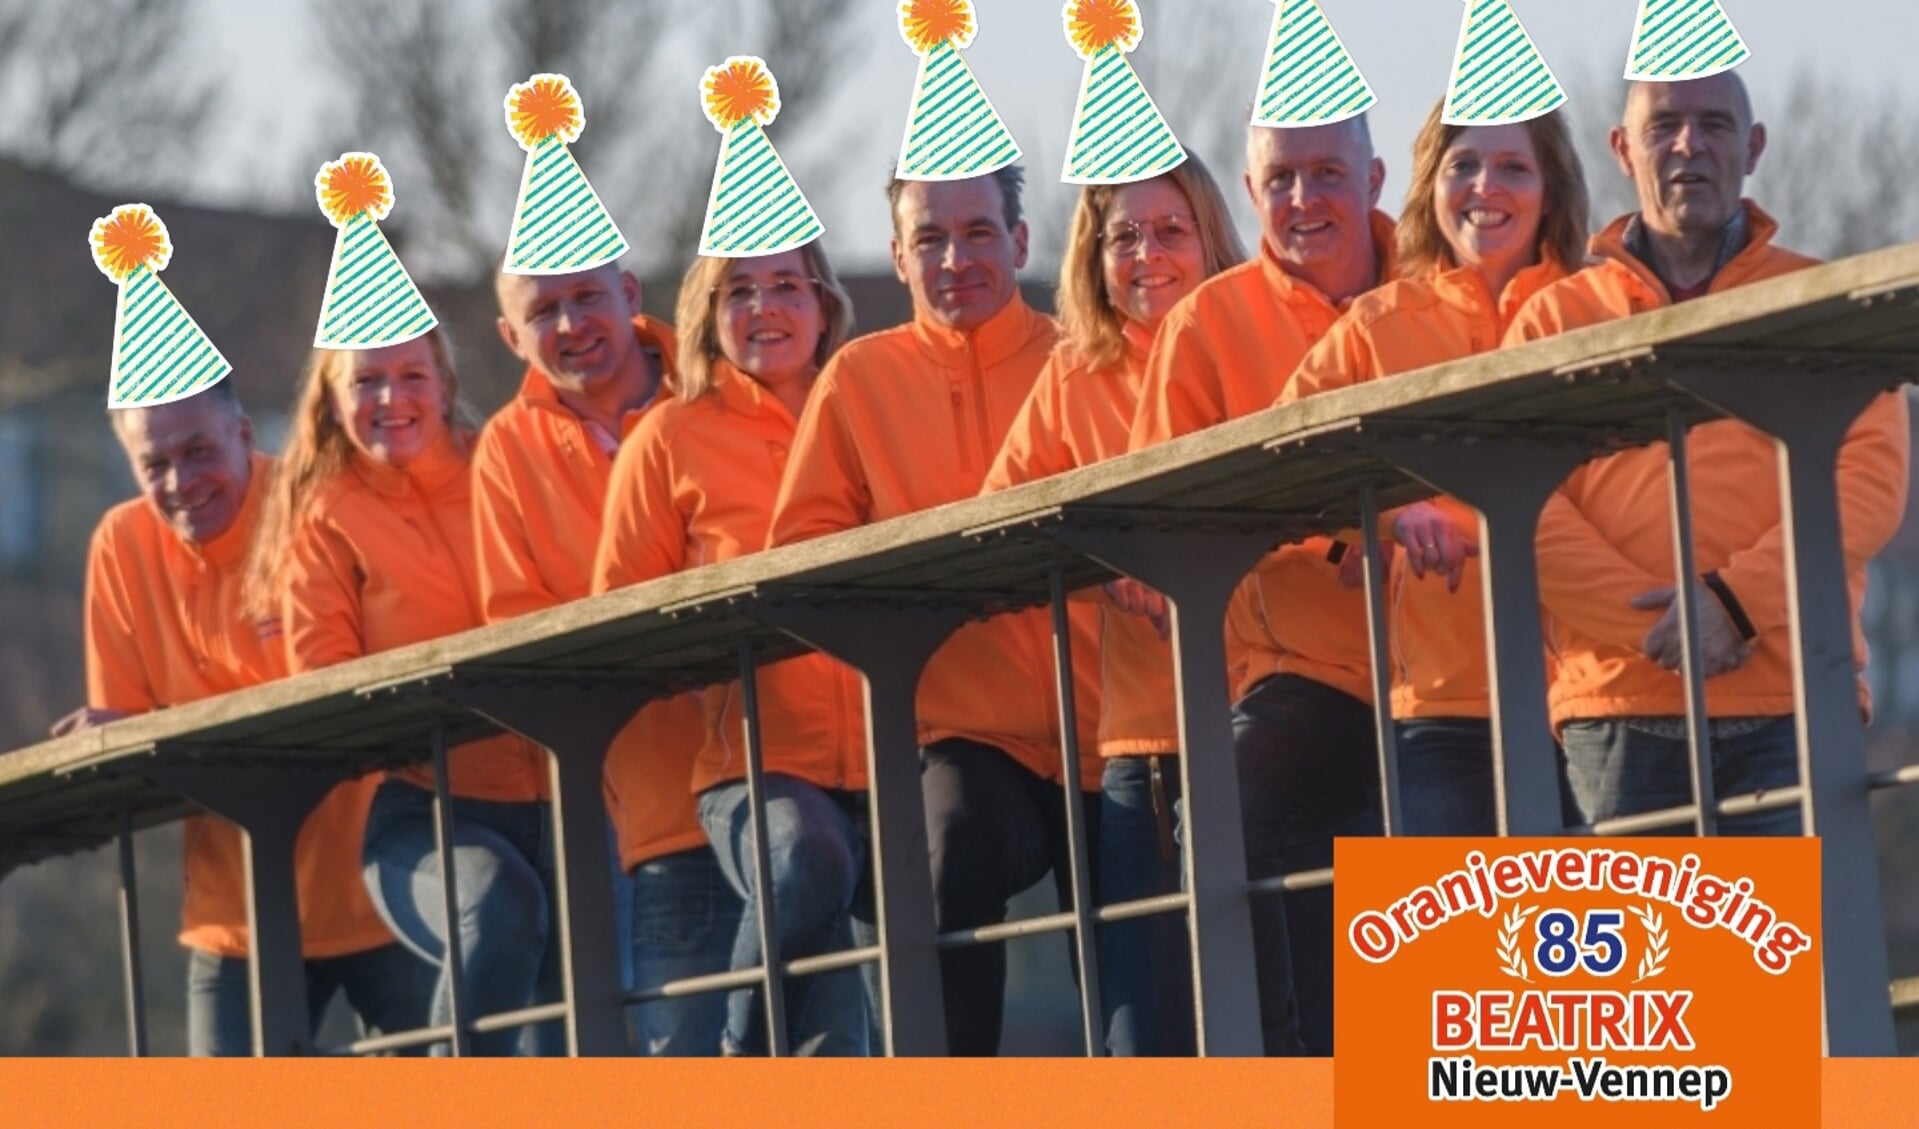 Oranjevereniging Beatrix bestaat 85 jaar. Daarom wordt het feest deze keer nog gezelliger. Vlnr Ben, Yvonne, André, Odette, Joost, Esther, Remco, Brenda en Piet.